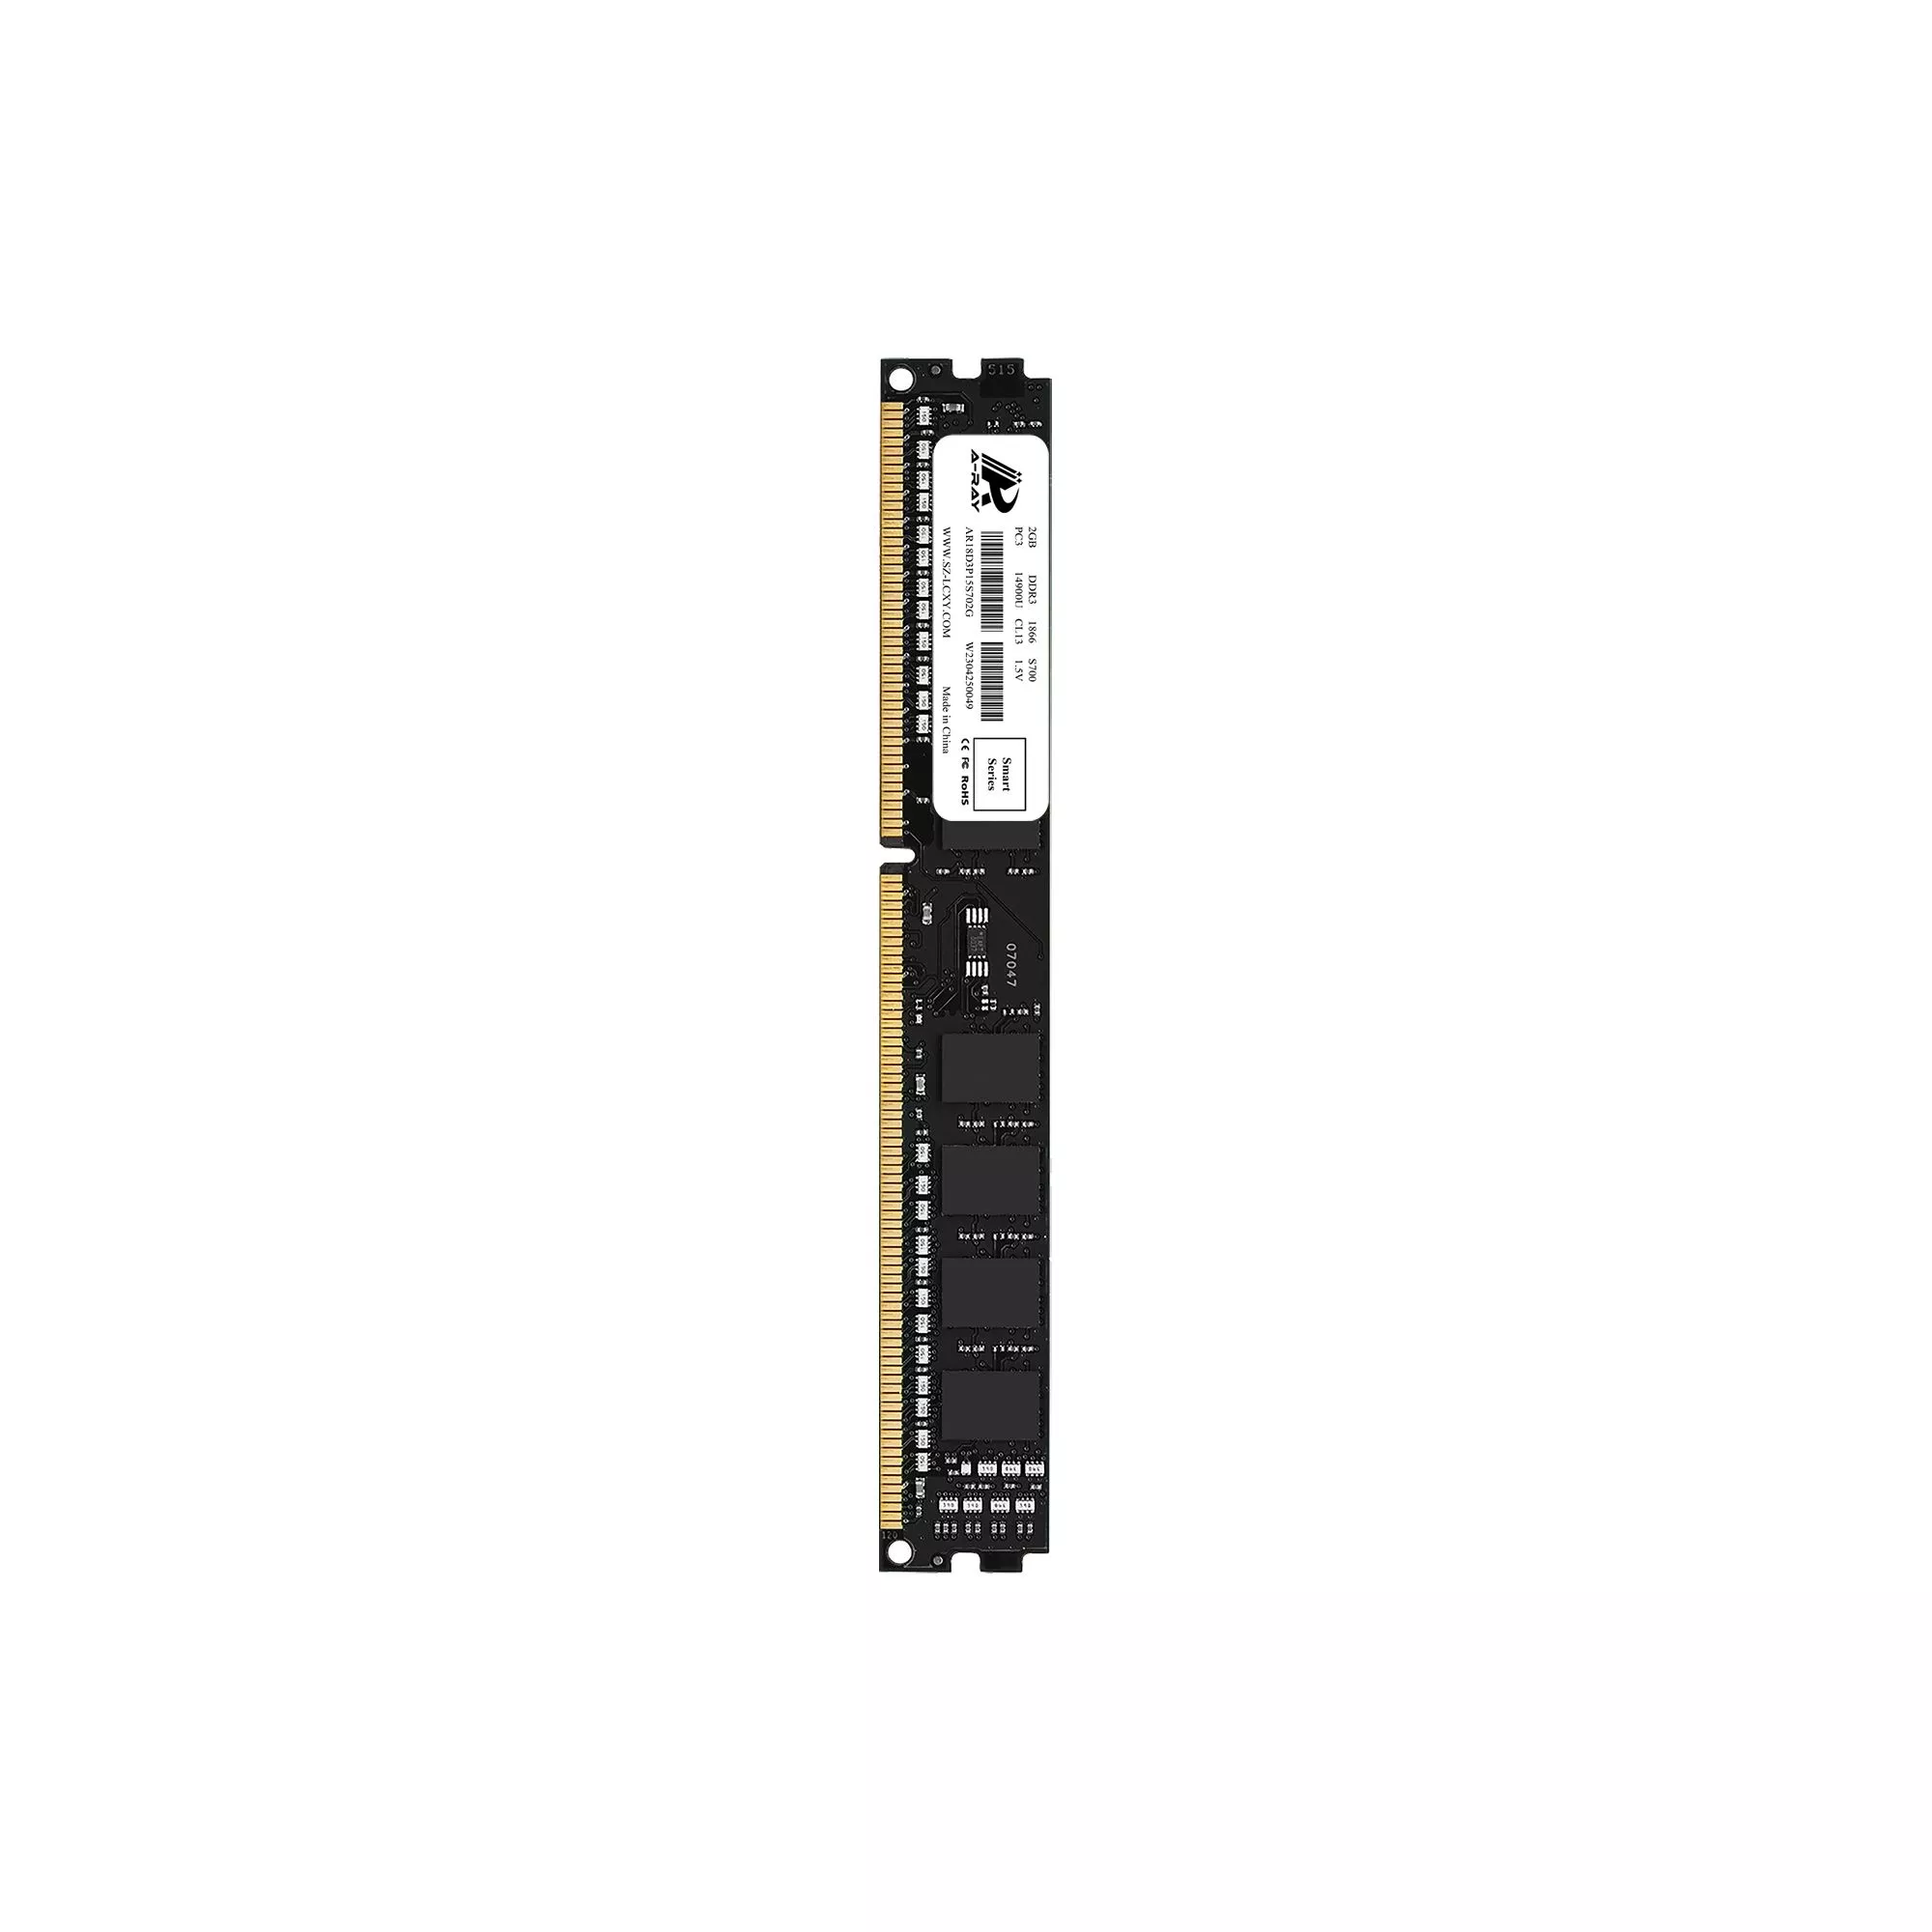 Ram A-Ray 2GB DDR3 Bus 1866 Mhz Desktop S700 14,928MB/s P/N: AR18D3P15S702G